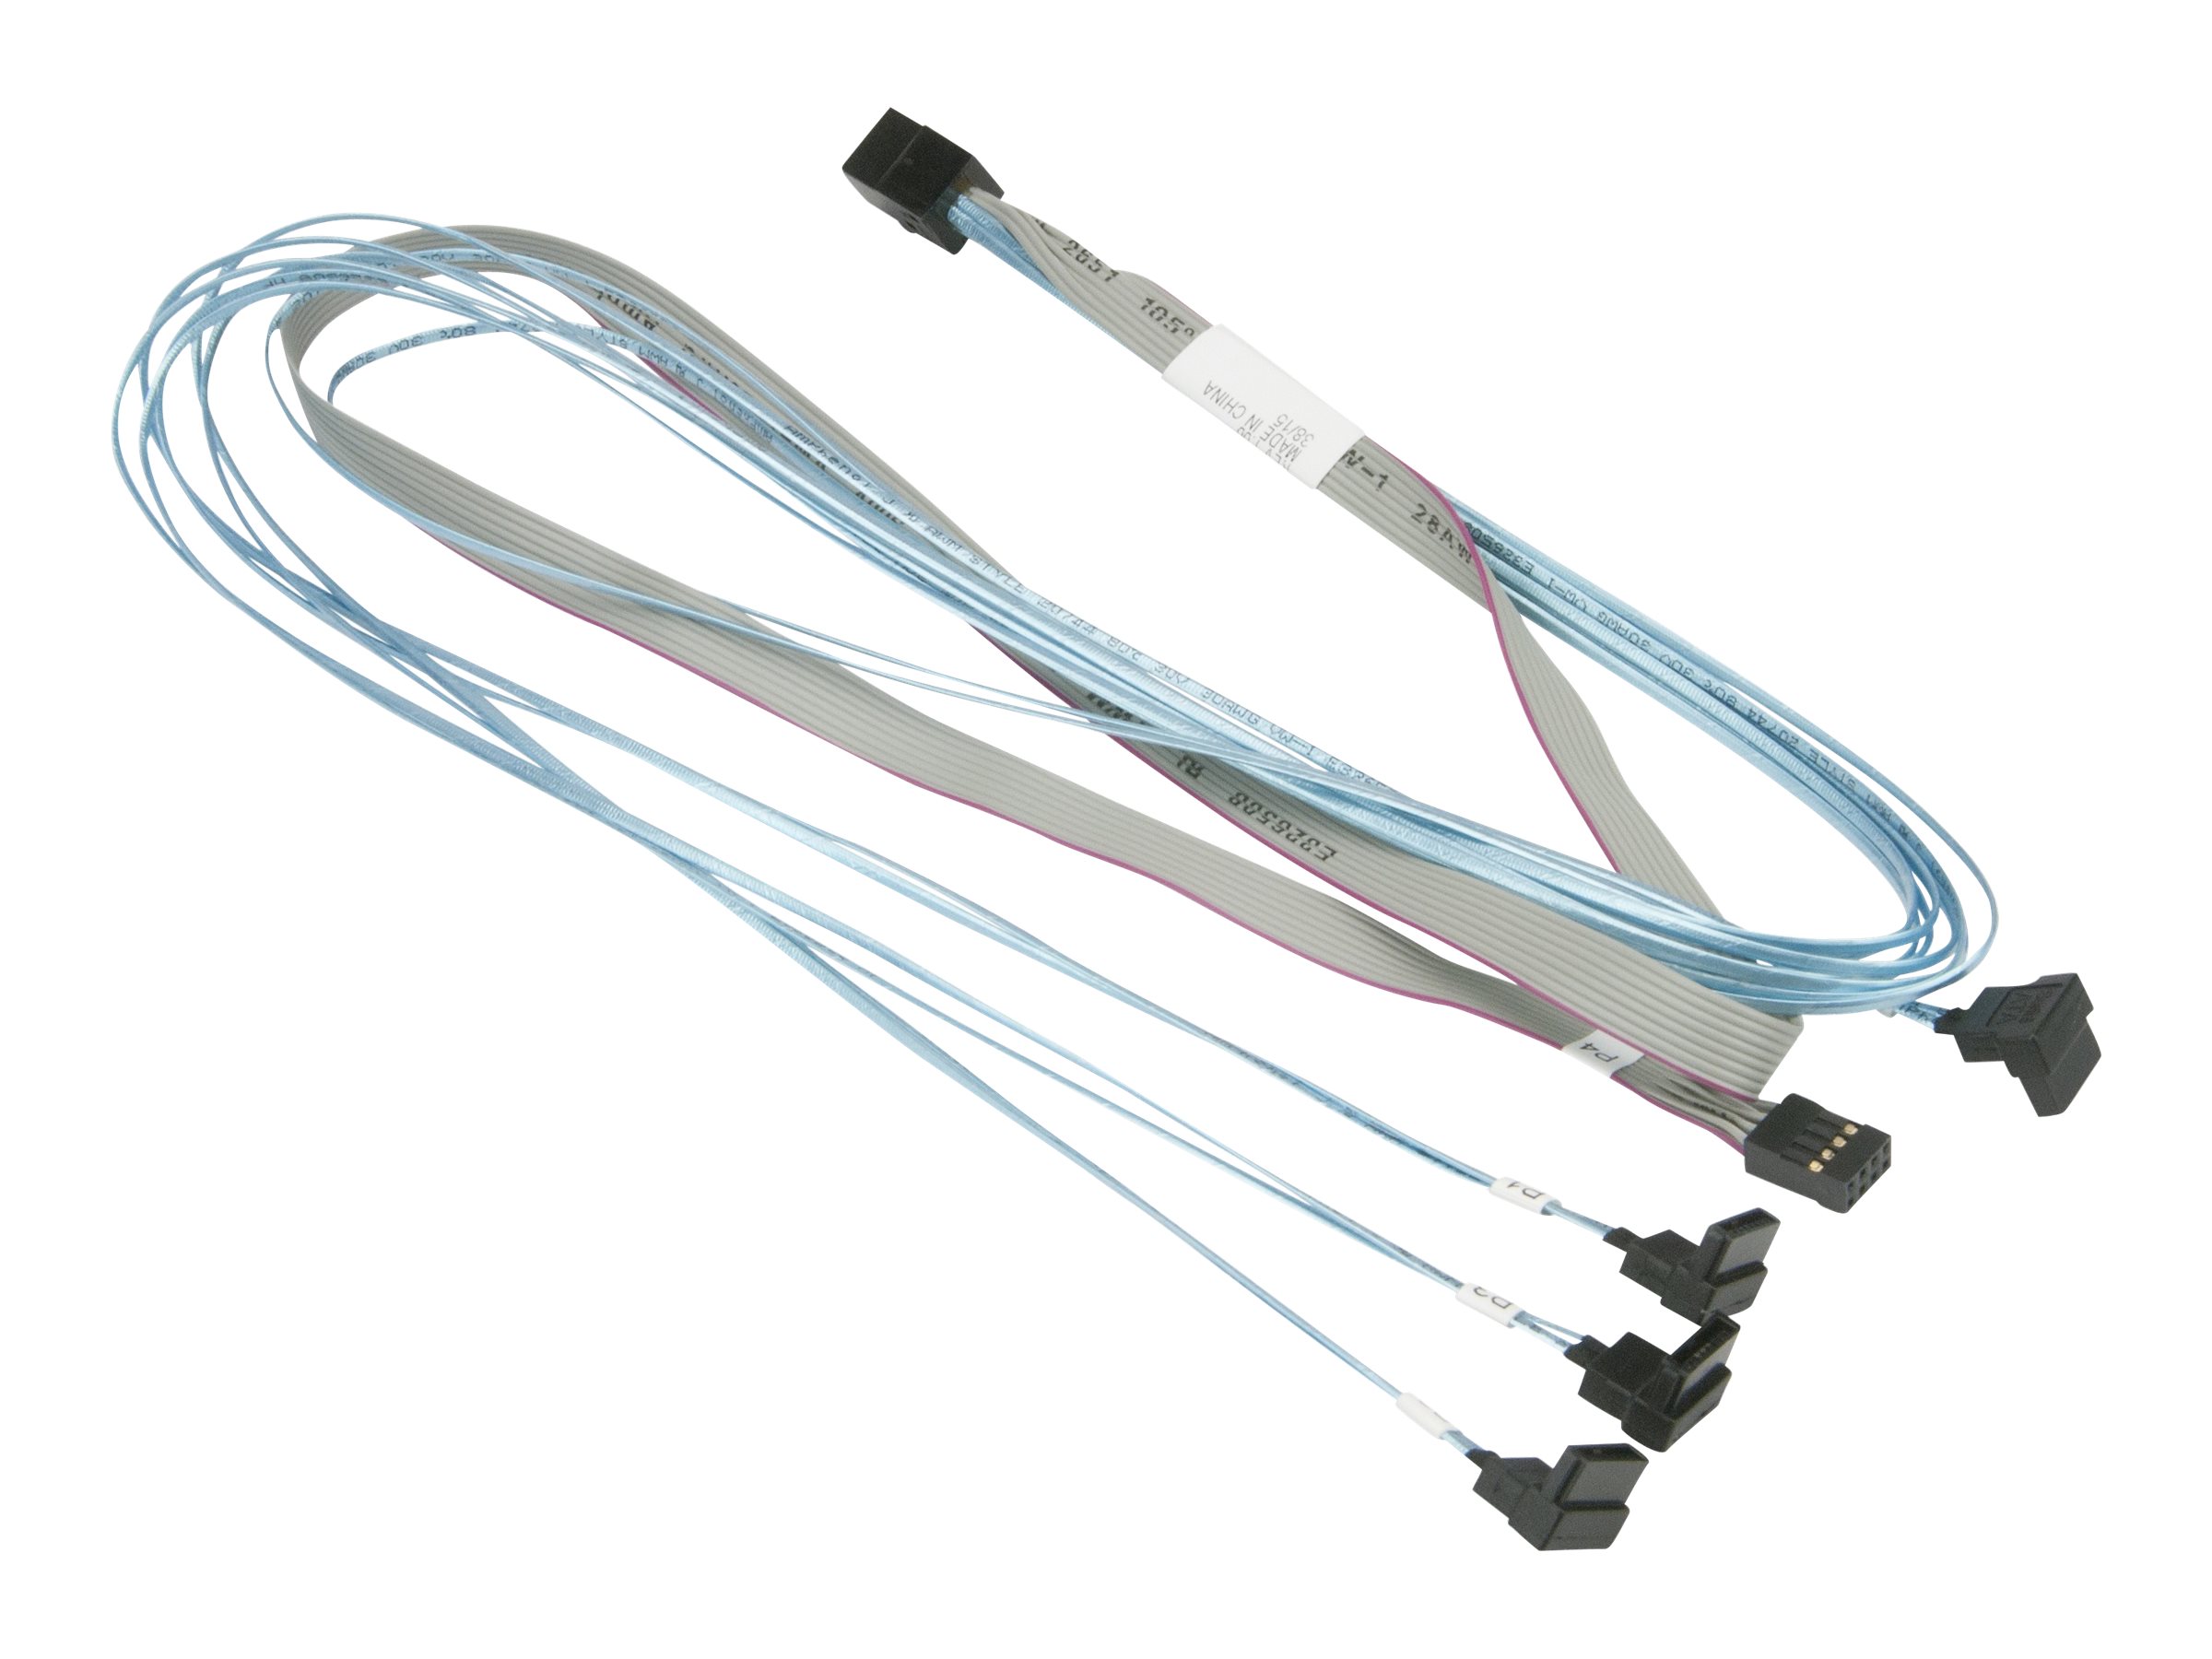 Supermicro - SATA- / SAS-Kabel - mit Sidebands - Überkreuzung - 4x Mini SAS HD (SFF-8643) (M) zu SATA, Seitenband (W) - 75 cm